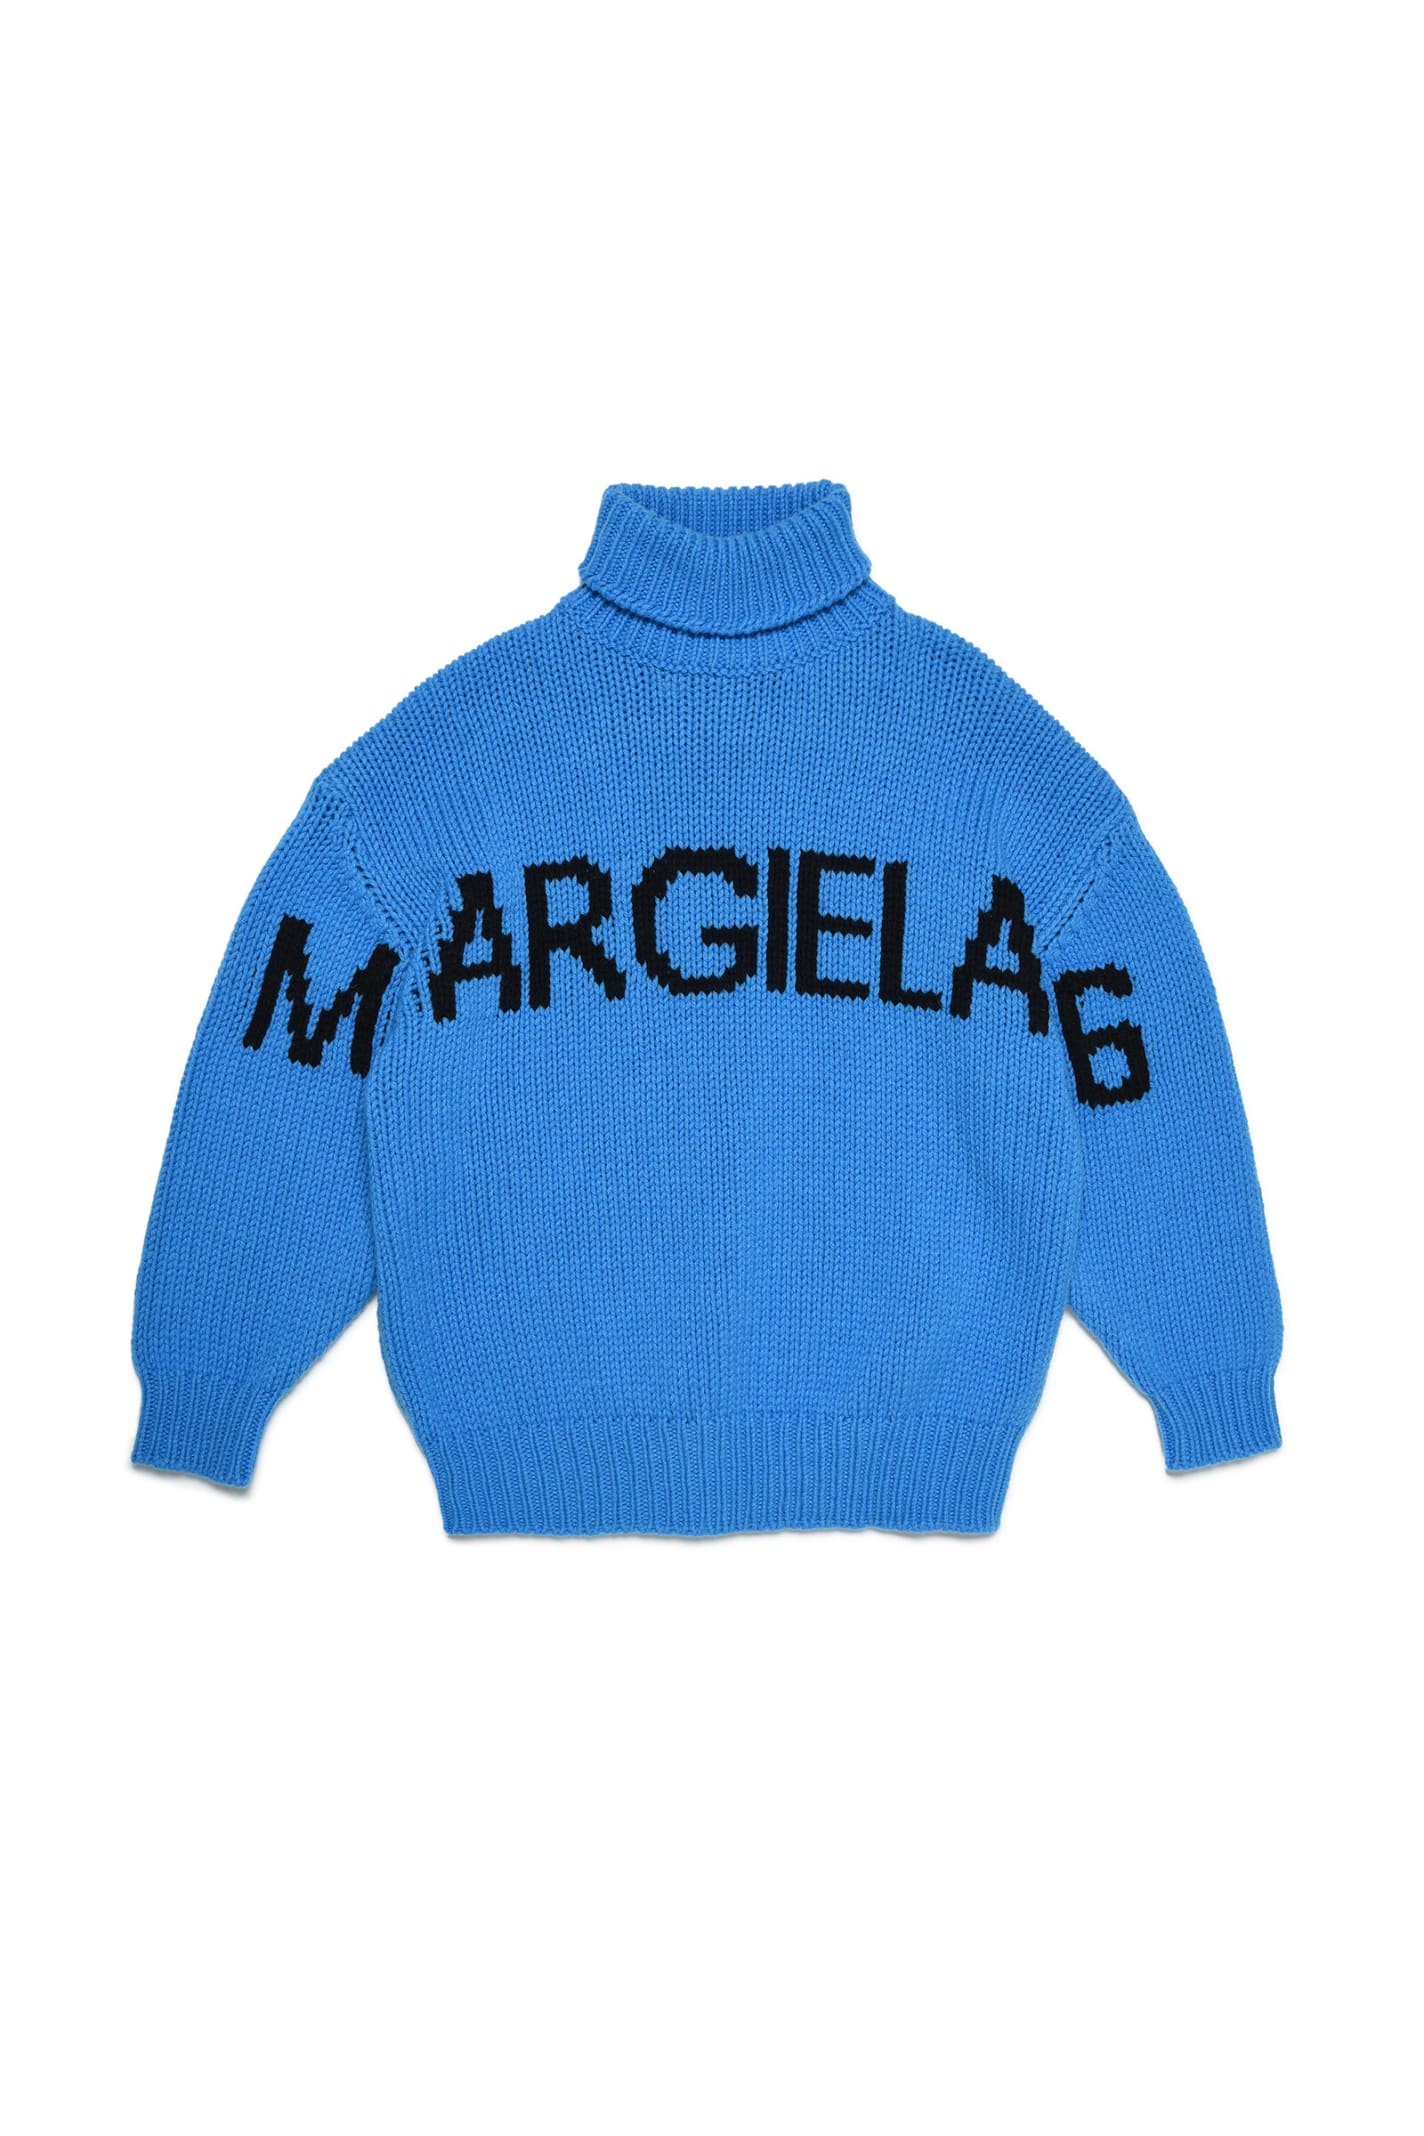 Mm6k7u Knitwear Maison Margiela